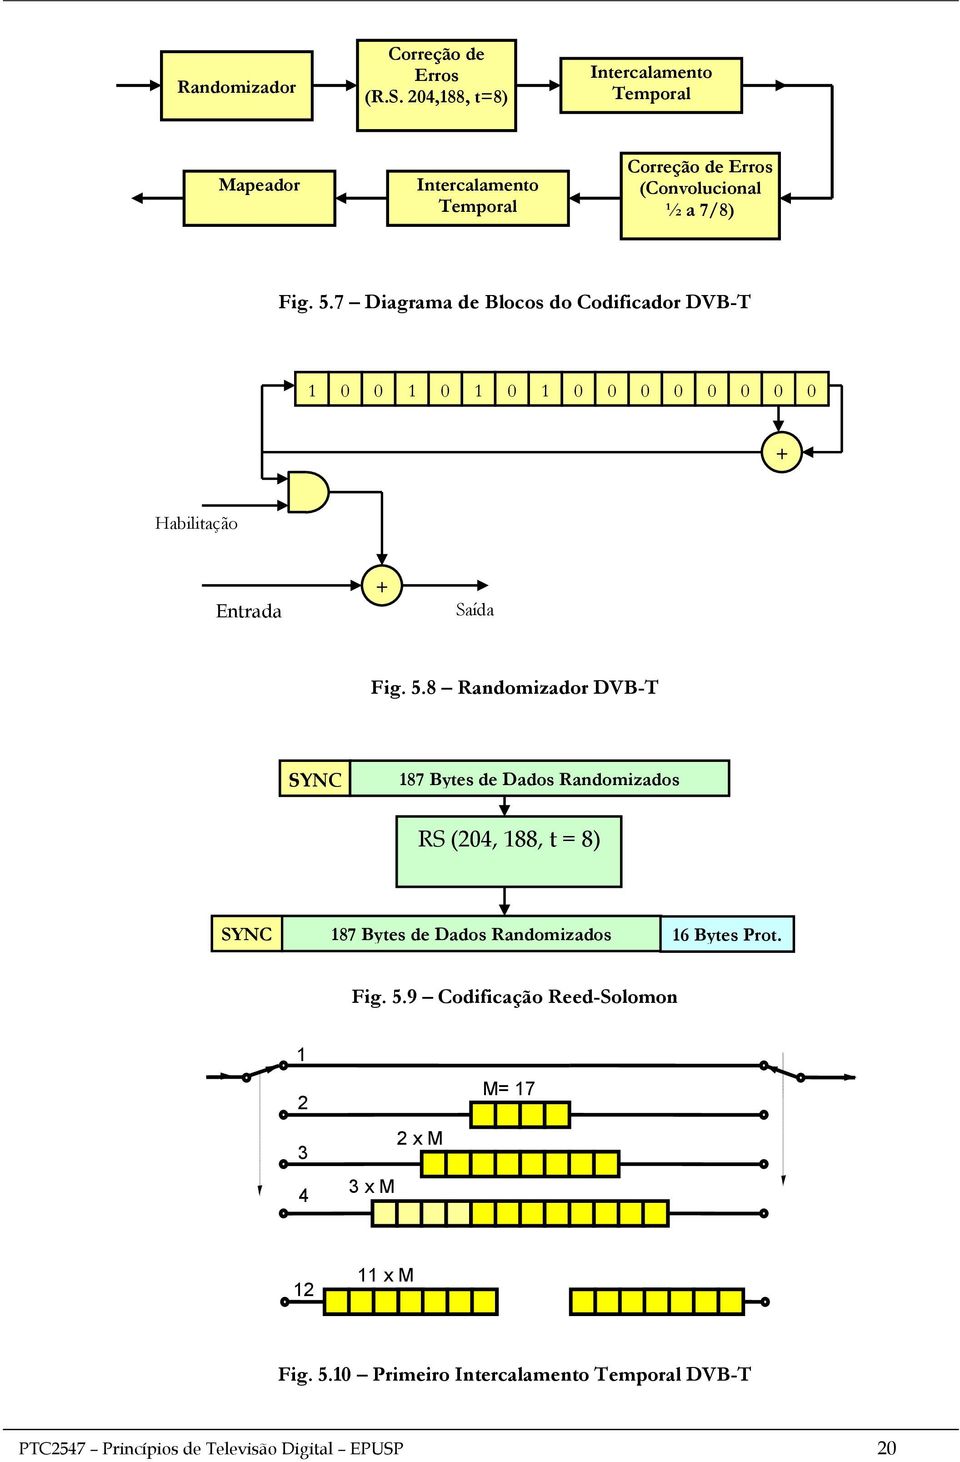 7 Diagrama de Blocos do Codificador DVB-T 1 0 0 1 0 1 0 1 0 0 0 0 0 0 0 0 + Habilitação Entrada Serial + Saída Fig. 5.